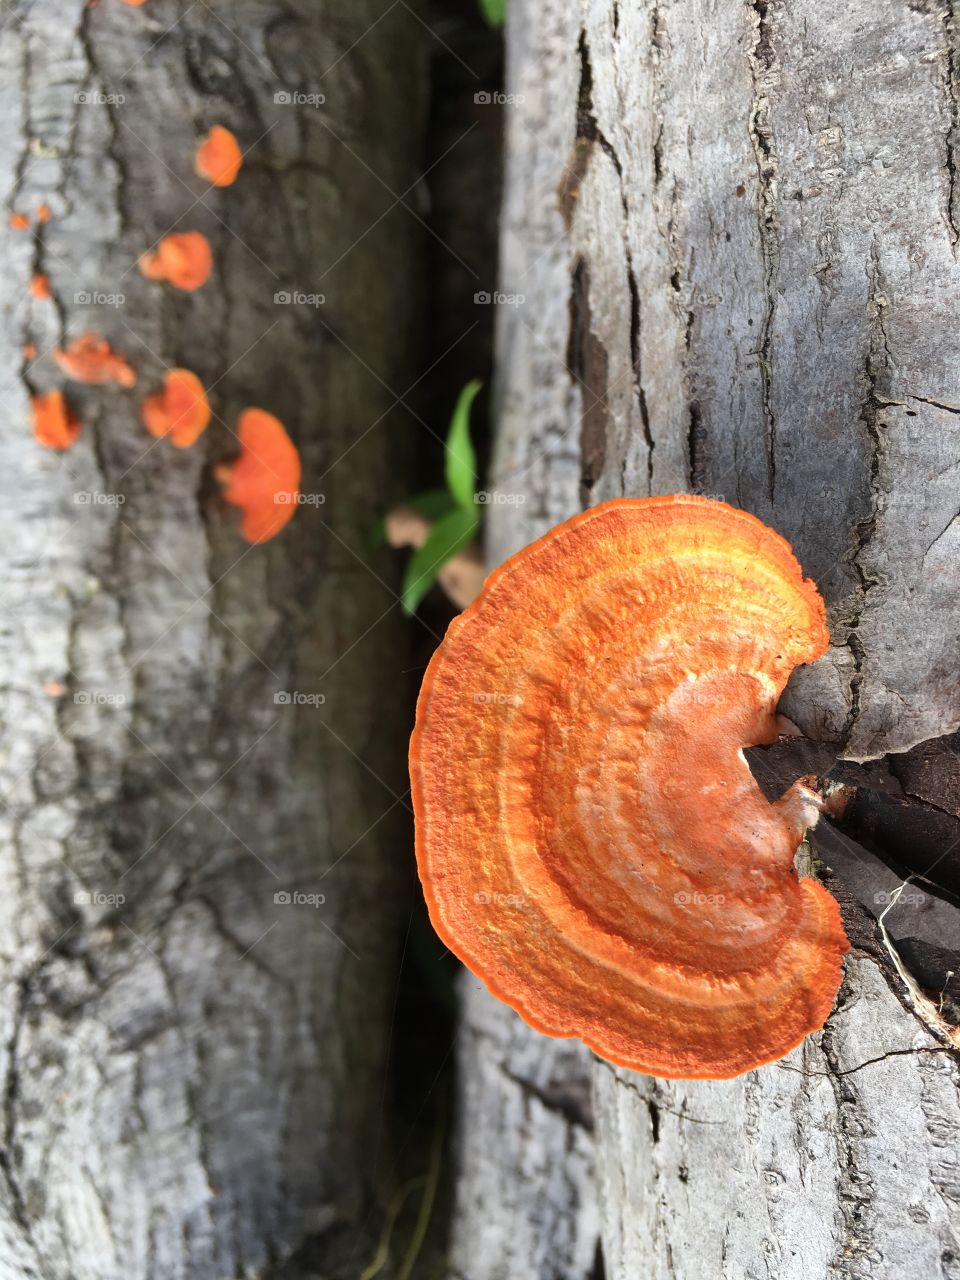 Orange fungus growing on wood